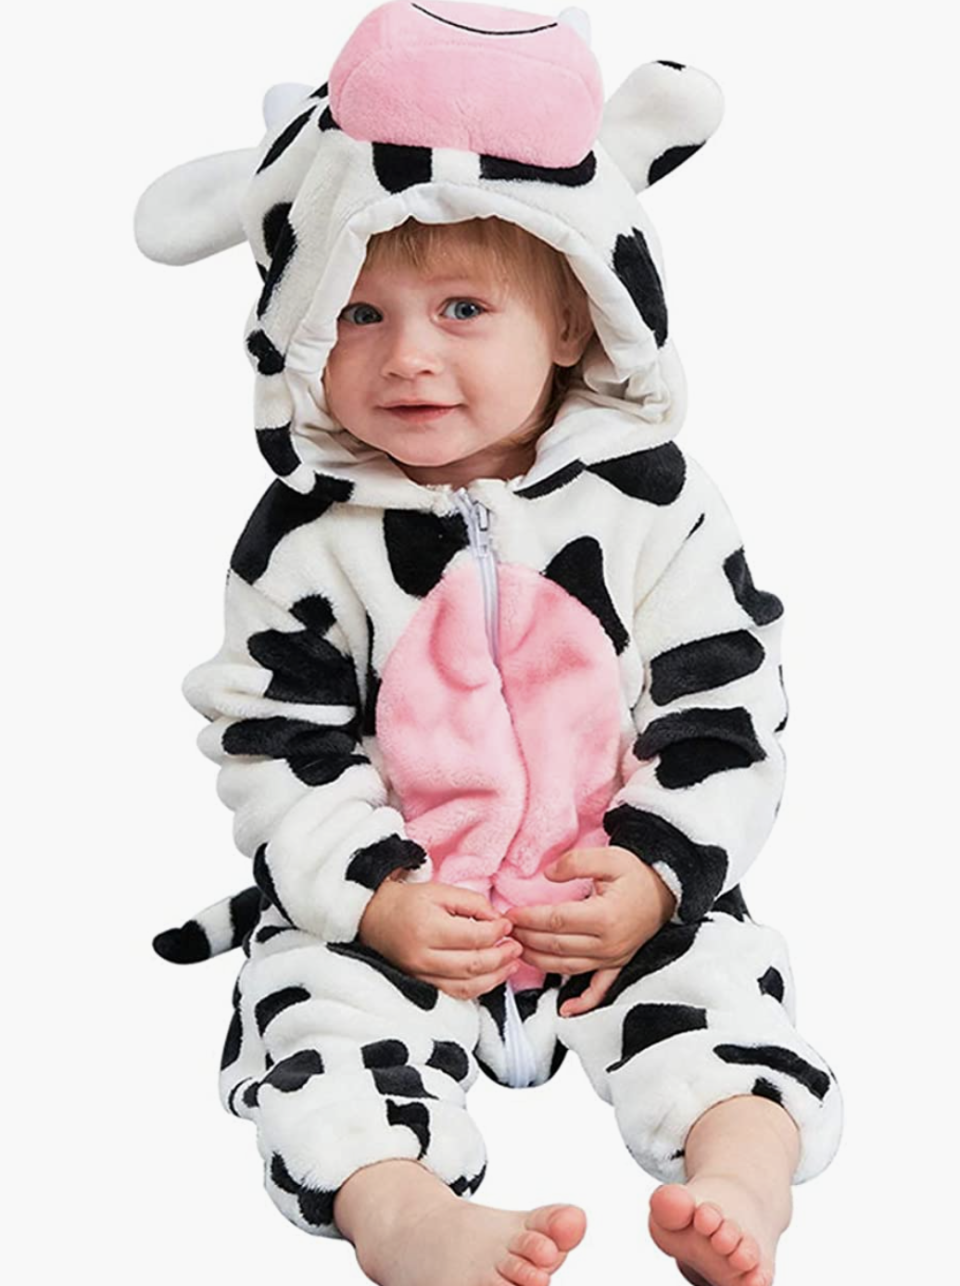 little boy wearing cow onesie halloween costume, Baby Animal Halloween Costume (Photo via Amazon)